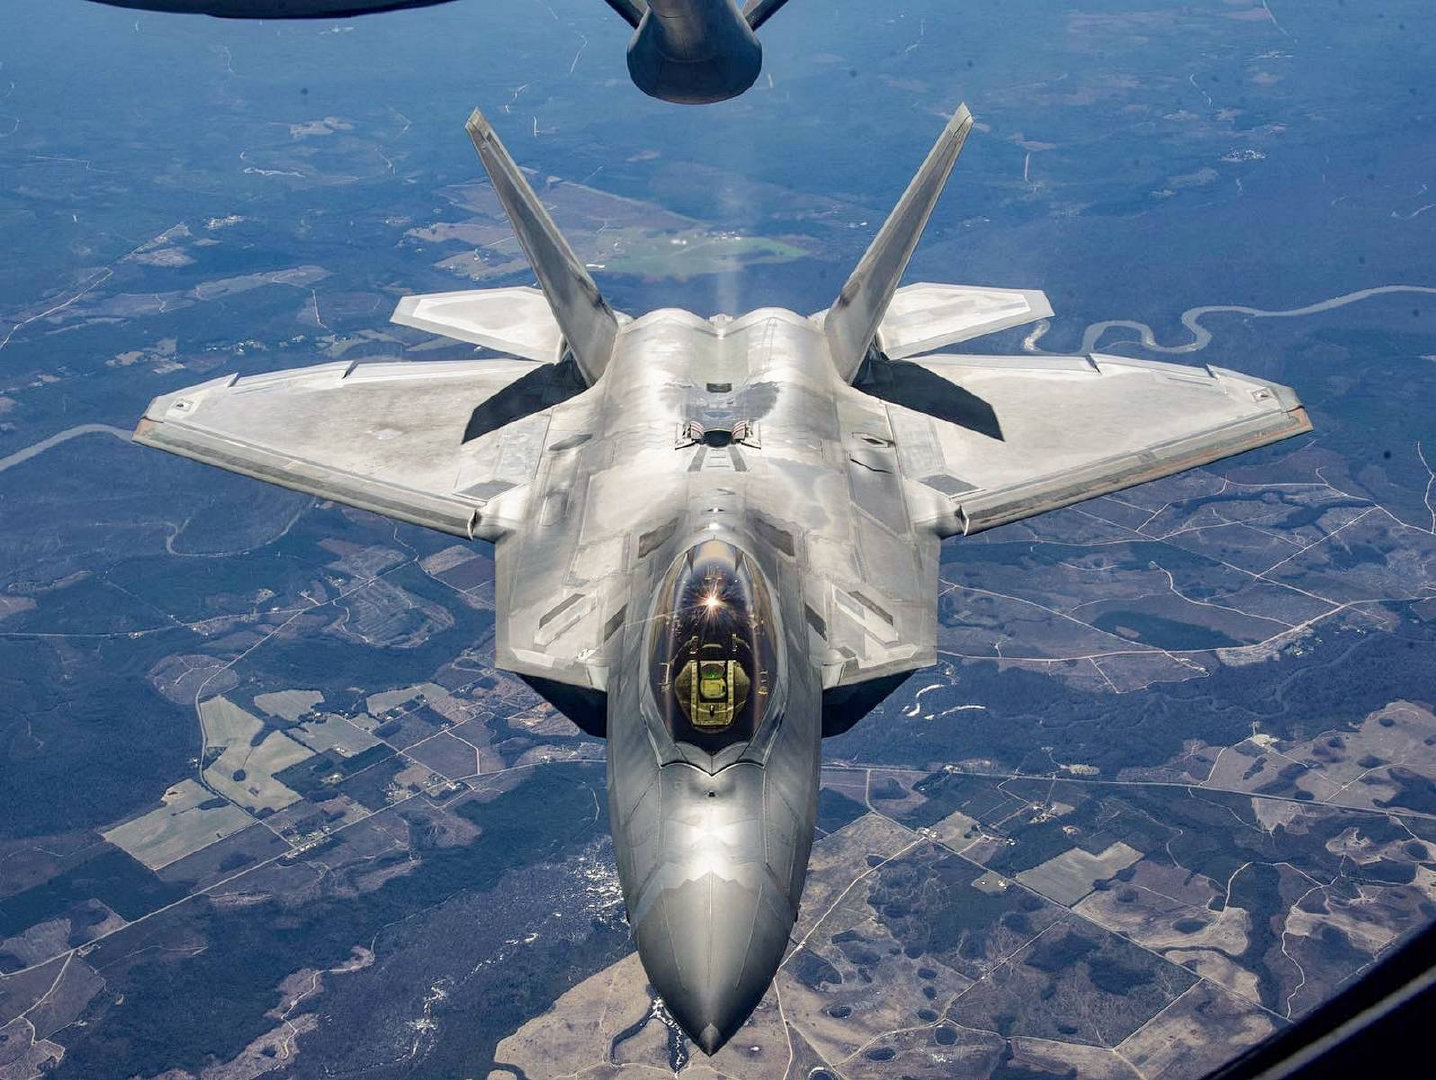 原创美国空军大修f-22战机,终于可以发射aim-9x导弹,已升级143架